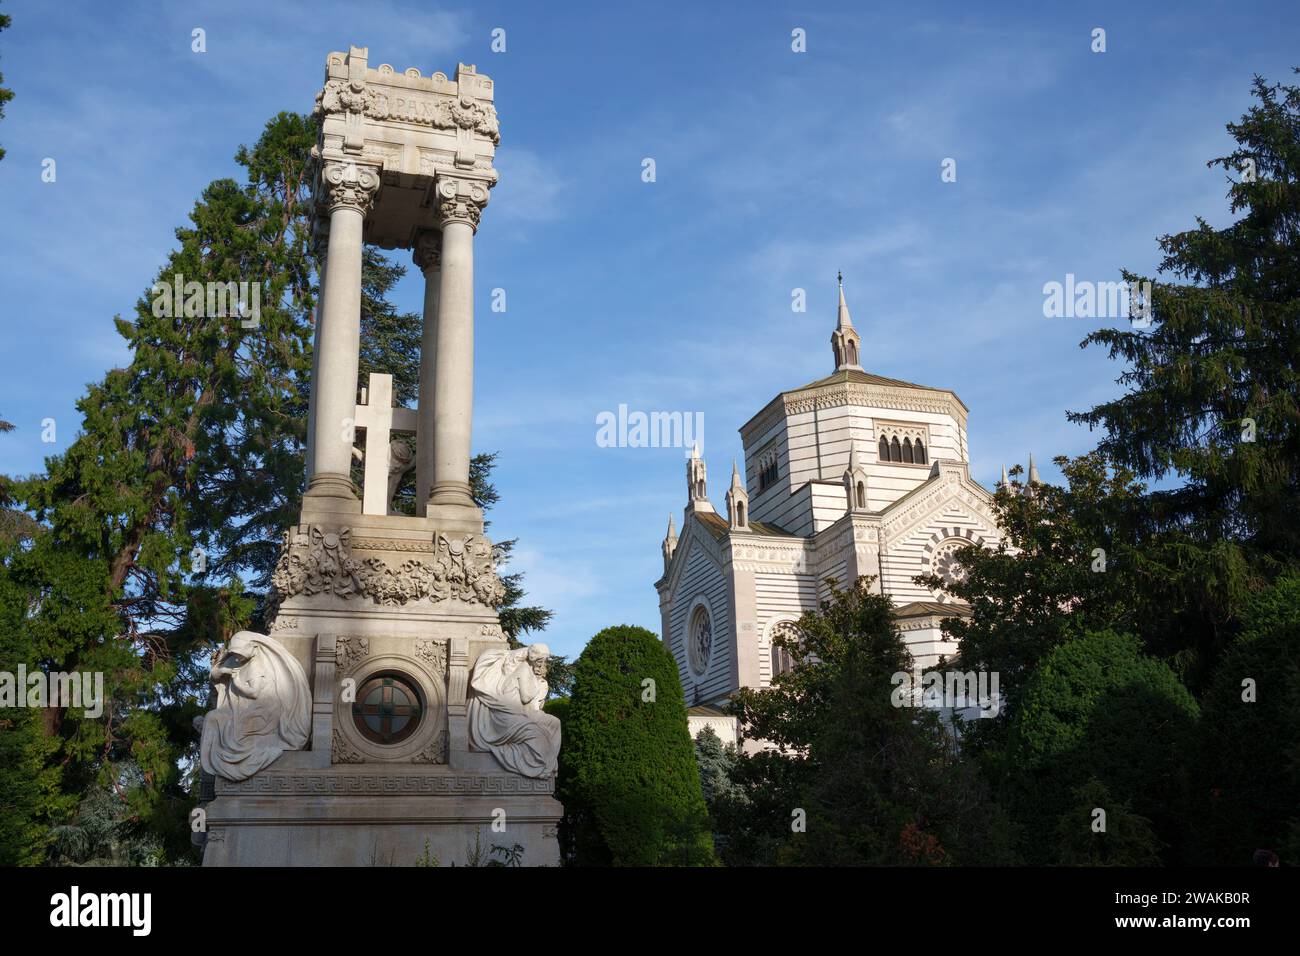 Cimitero Monumentale, cimetière historique de Milan, Lombardie, Italie Banque D'Images